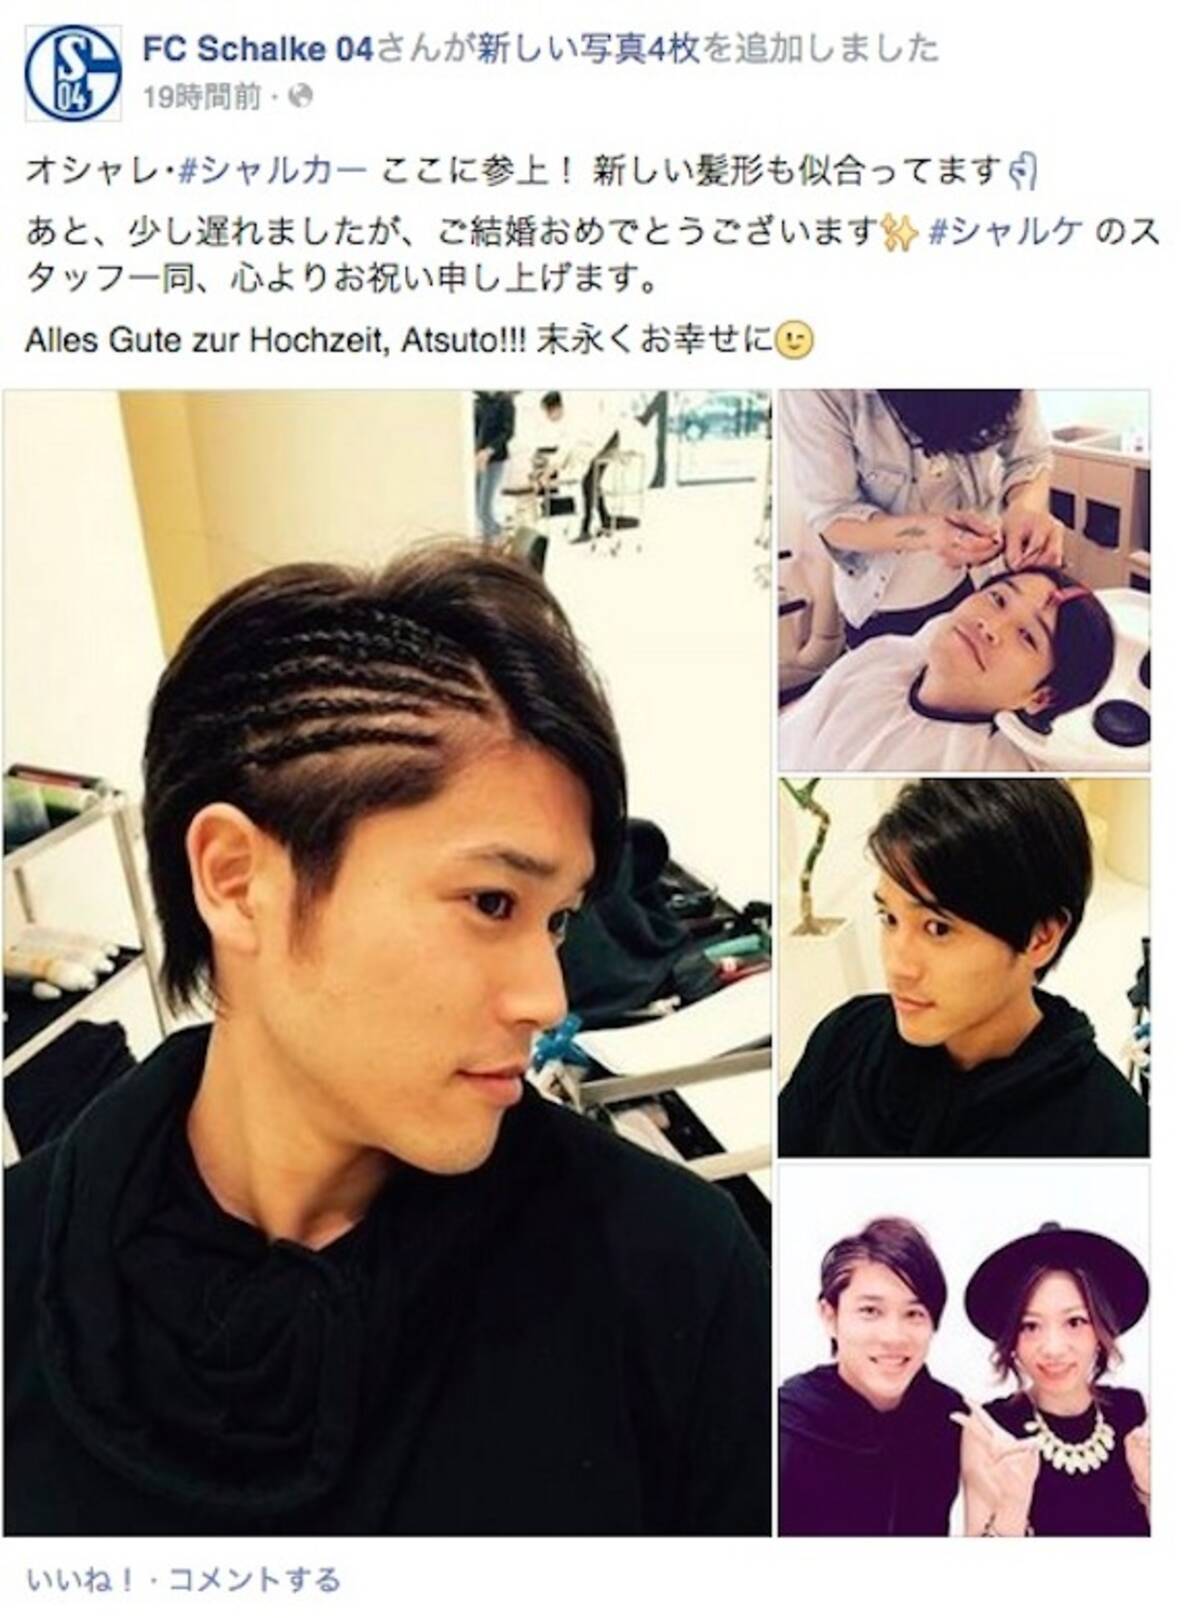 新しい髪型を披露した内田篤人選手がかわいすぎると話題 ネットの声 ウッチーかわいいよウッチー 15年6月2日 エキサイトニュース